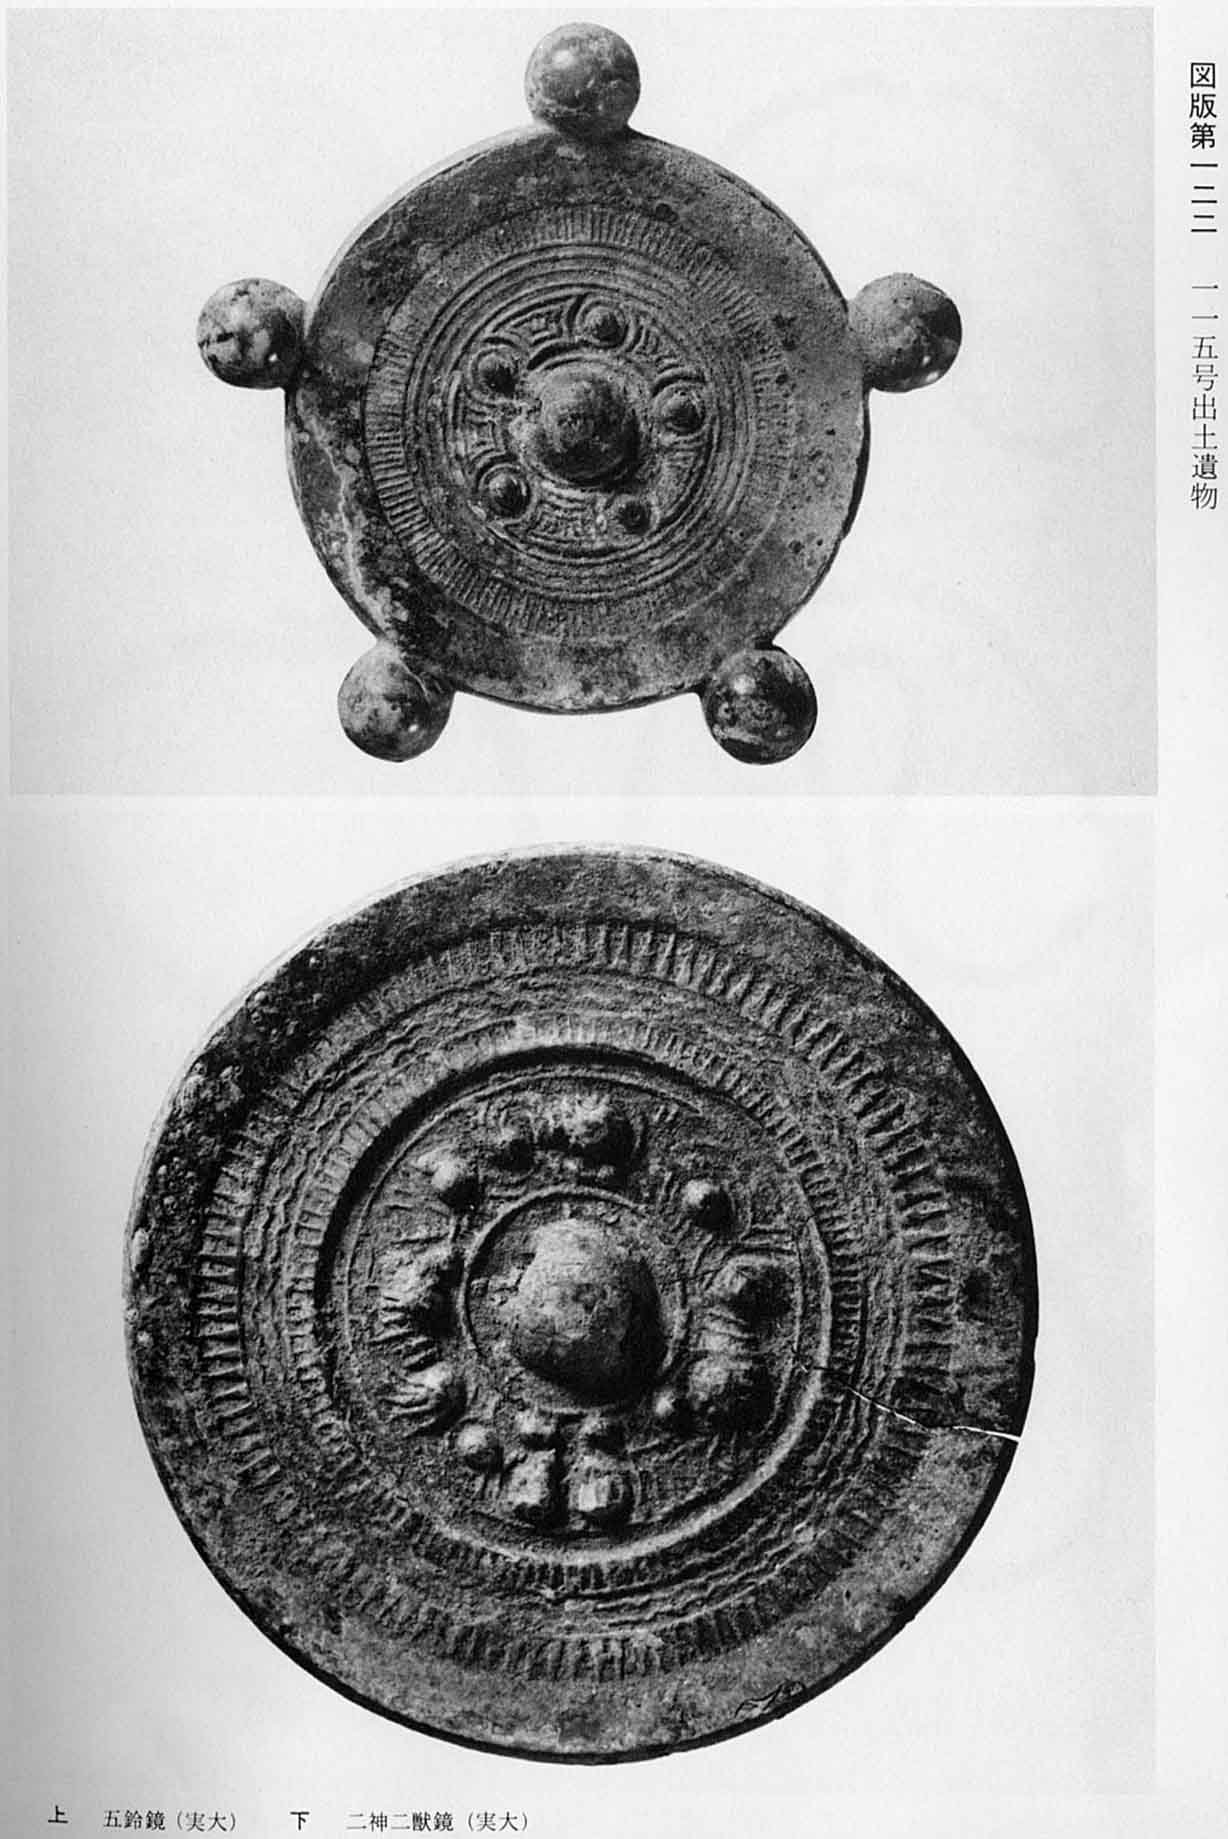 5つの丸い鈴が飾られている鏡と、神や獣がデザインされている鏡が撮影されている、図版122 115号出土遺物のモノクロ写真